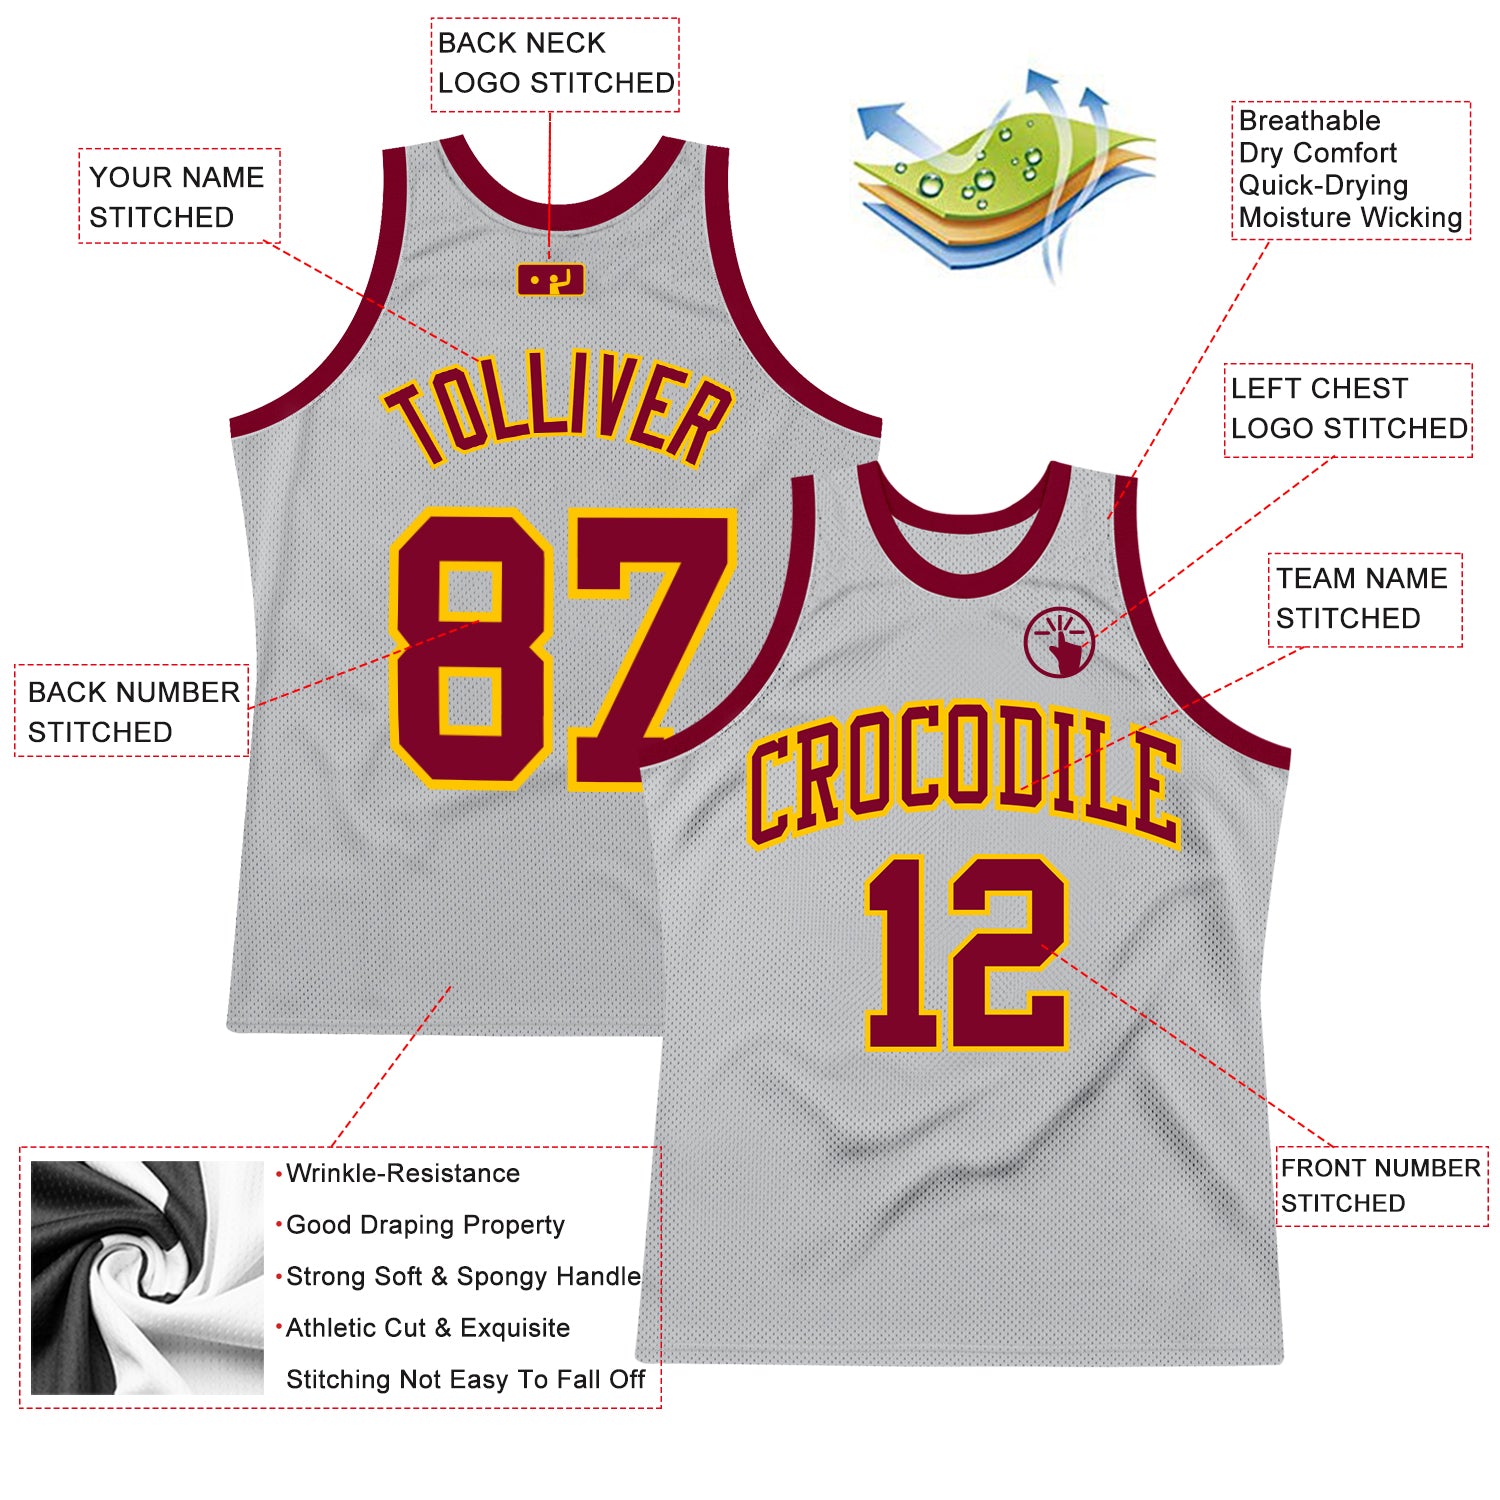 Cleveland Cavaliers Home Uniform  Basketball t shirt designs, Best  basketball jersey design, Basketball jersey outfit